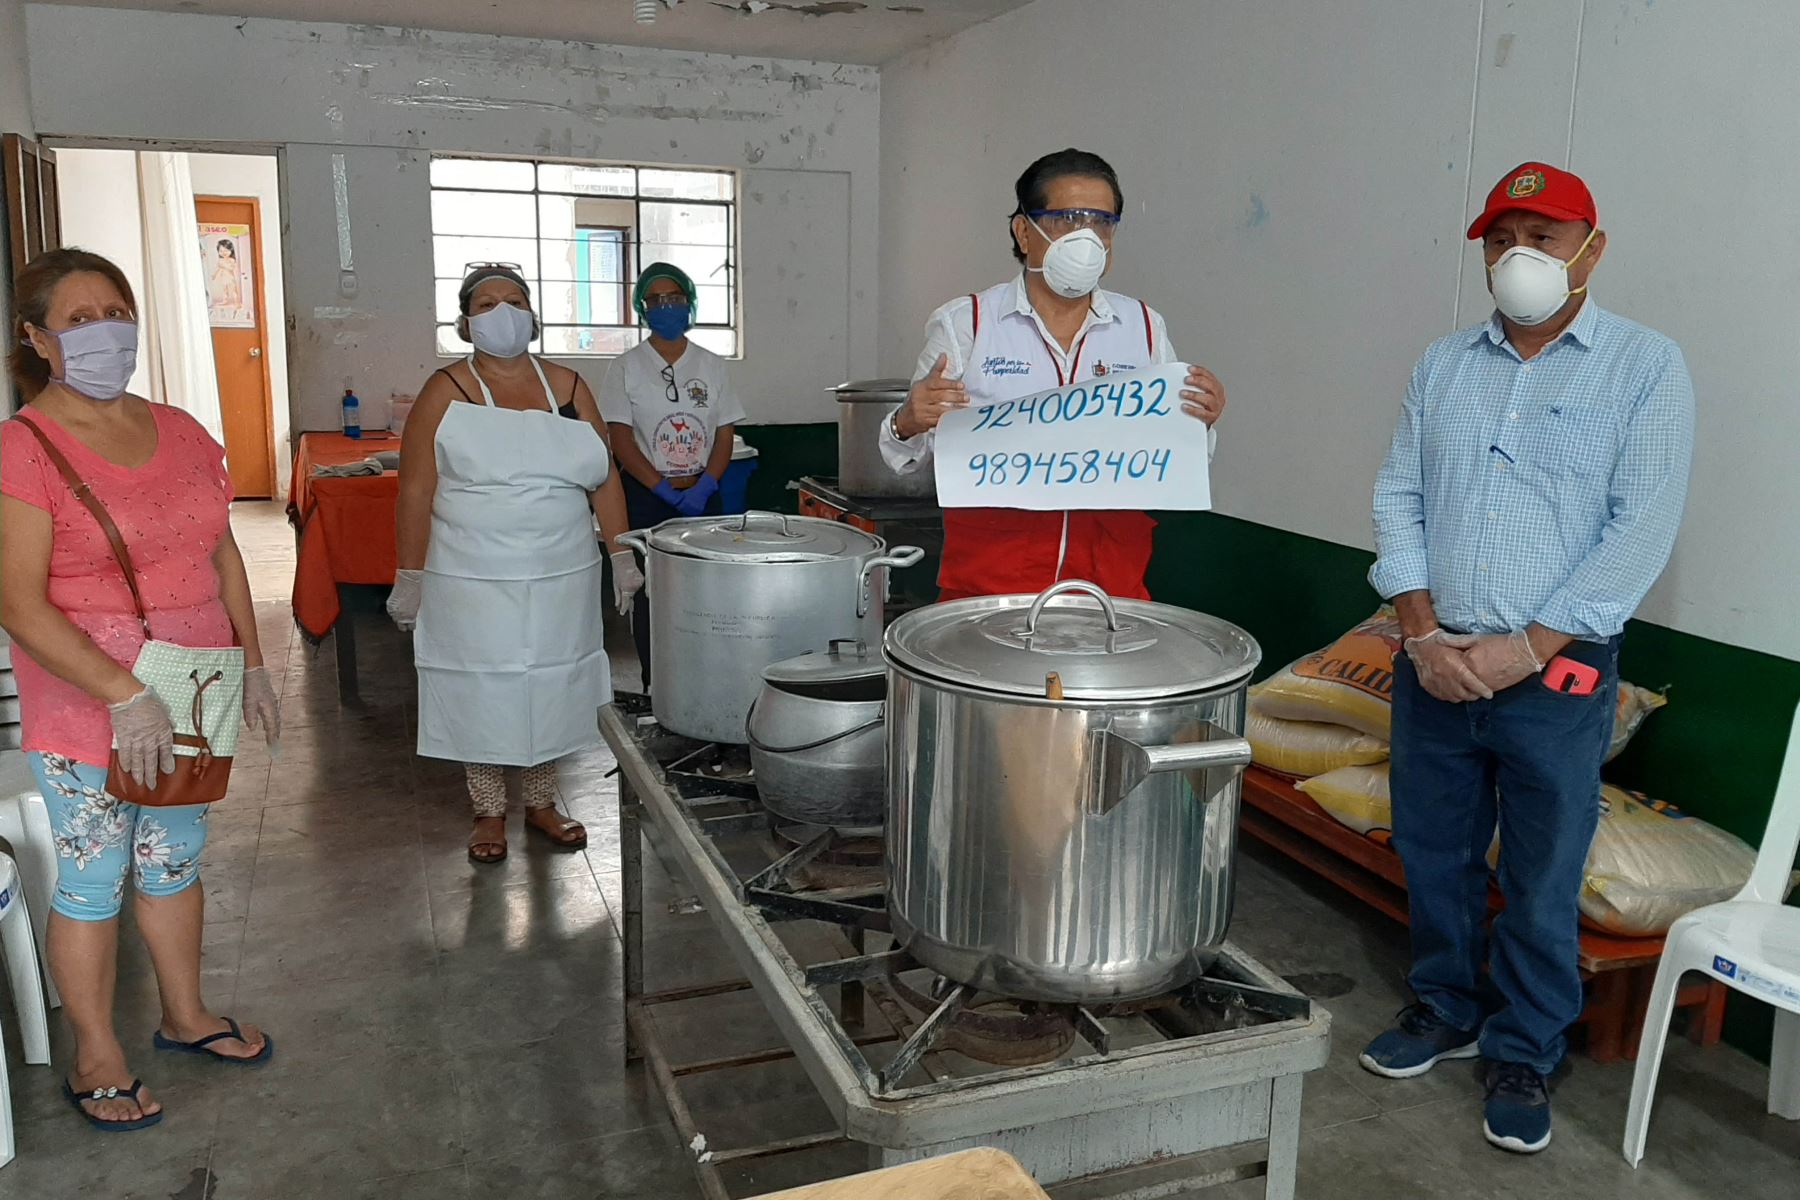 Alrededor de 6,600 personas en situación vulnerable de la provincia de Trujillo, región La Libertad, reciben almuerzo cada día. Foto: Cortesía Luis Puell